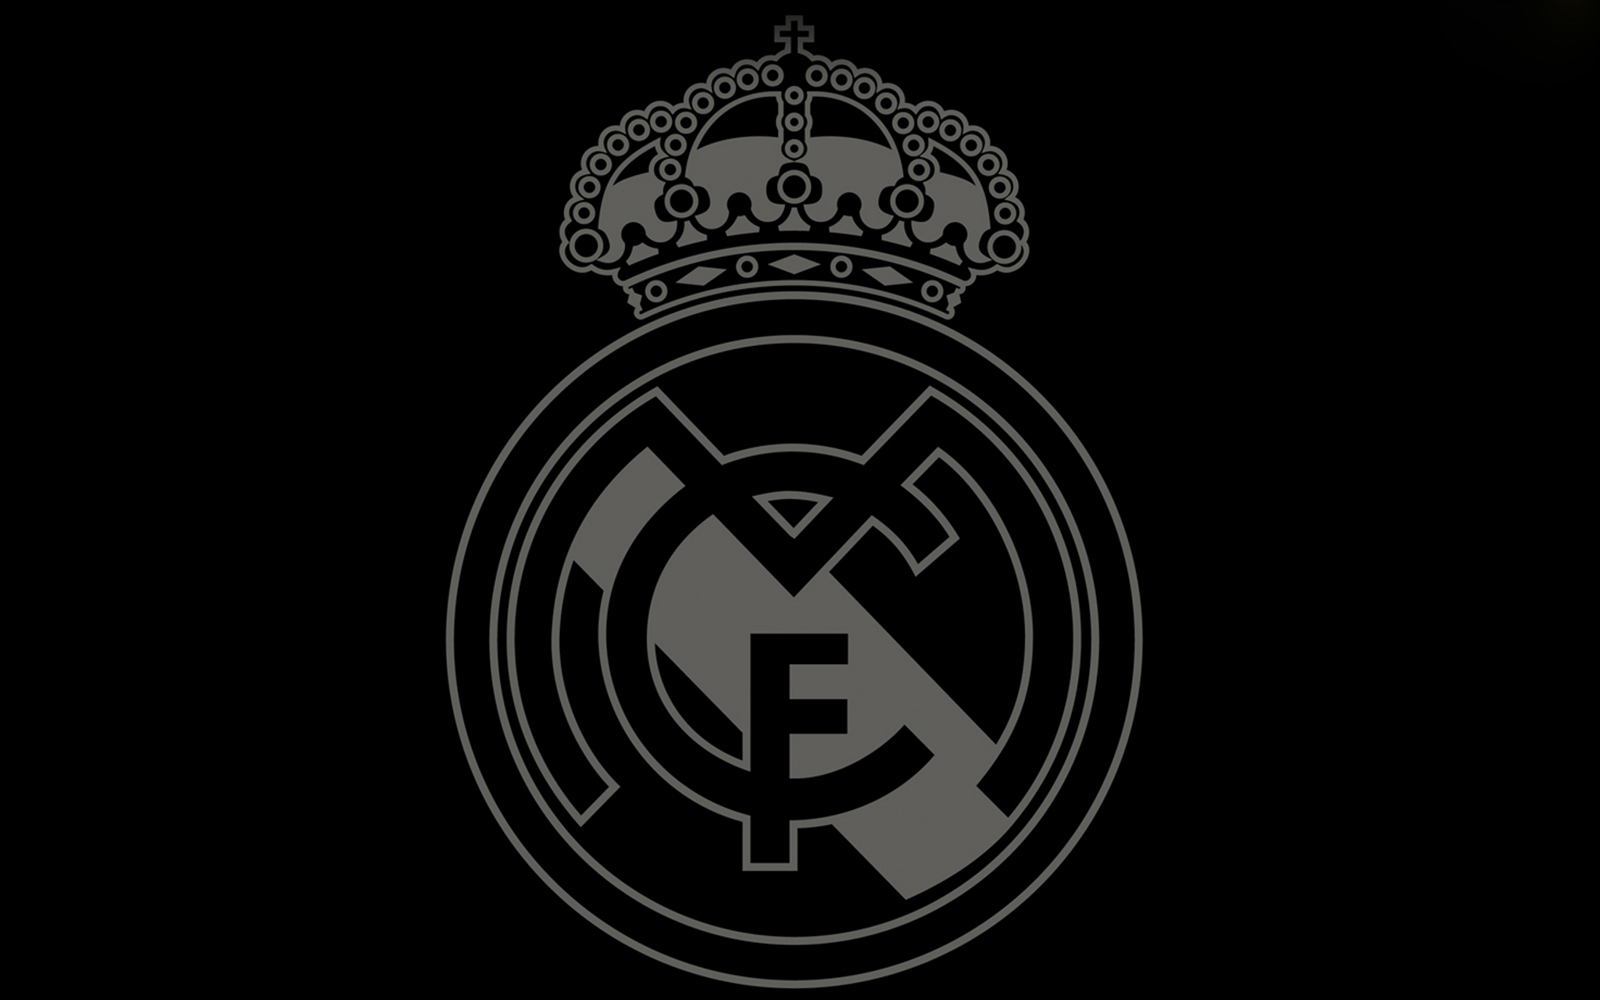 48+] Real Madrid Logo Wallpaper Downloads - WallpaperSafari